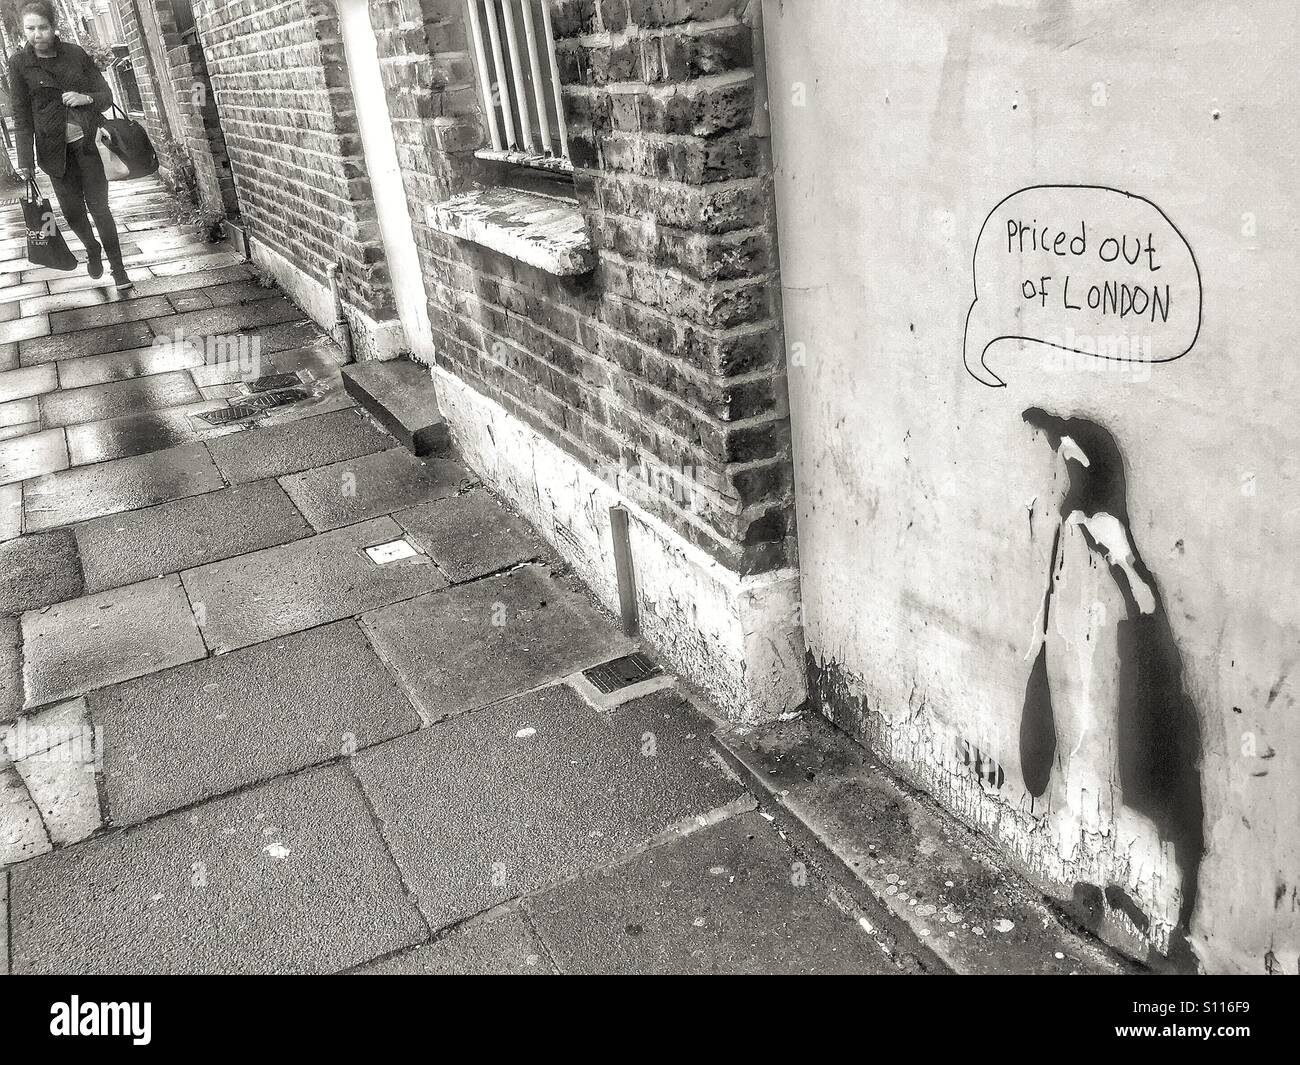 A prezzi fuori di Londra. Graffiti e arte di strada sulla scaletta di Harringay. London, Regno Unito Foto Stock